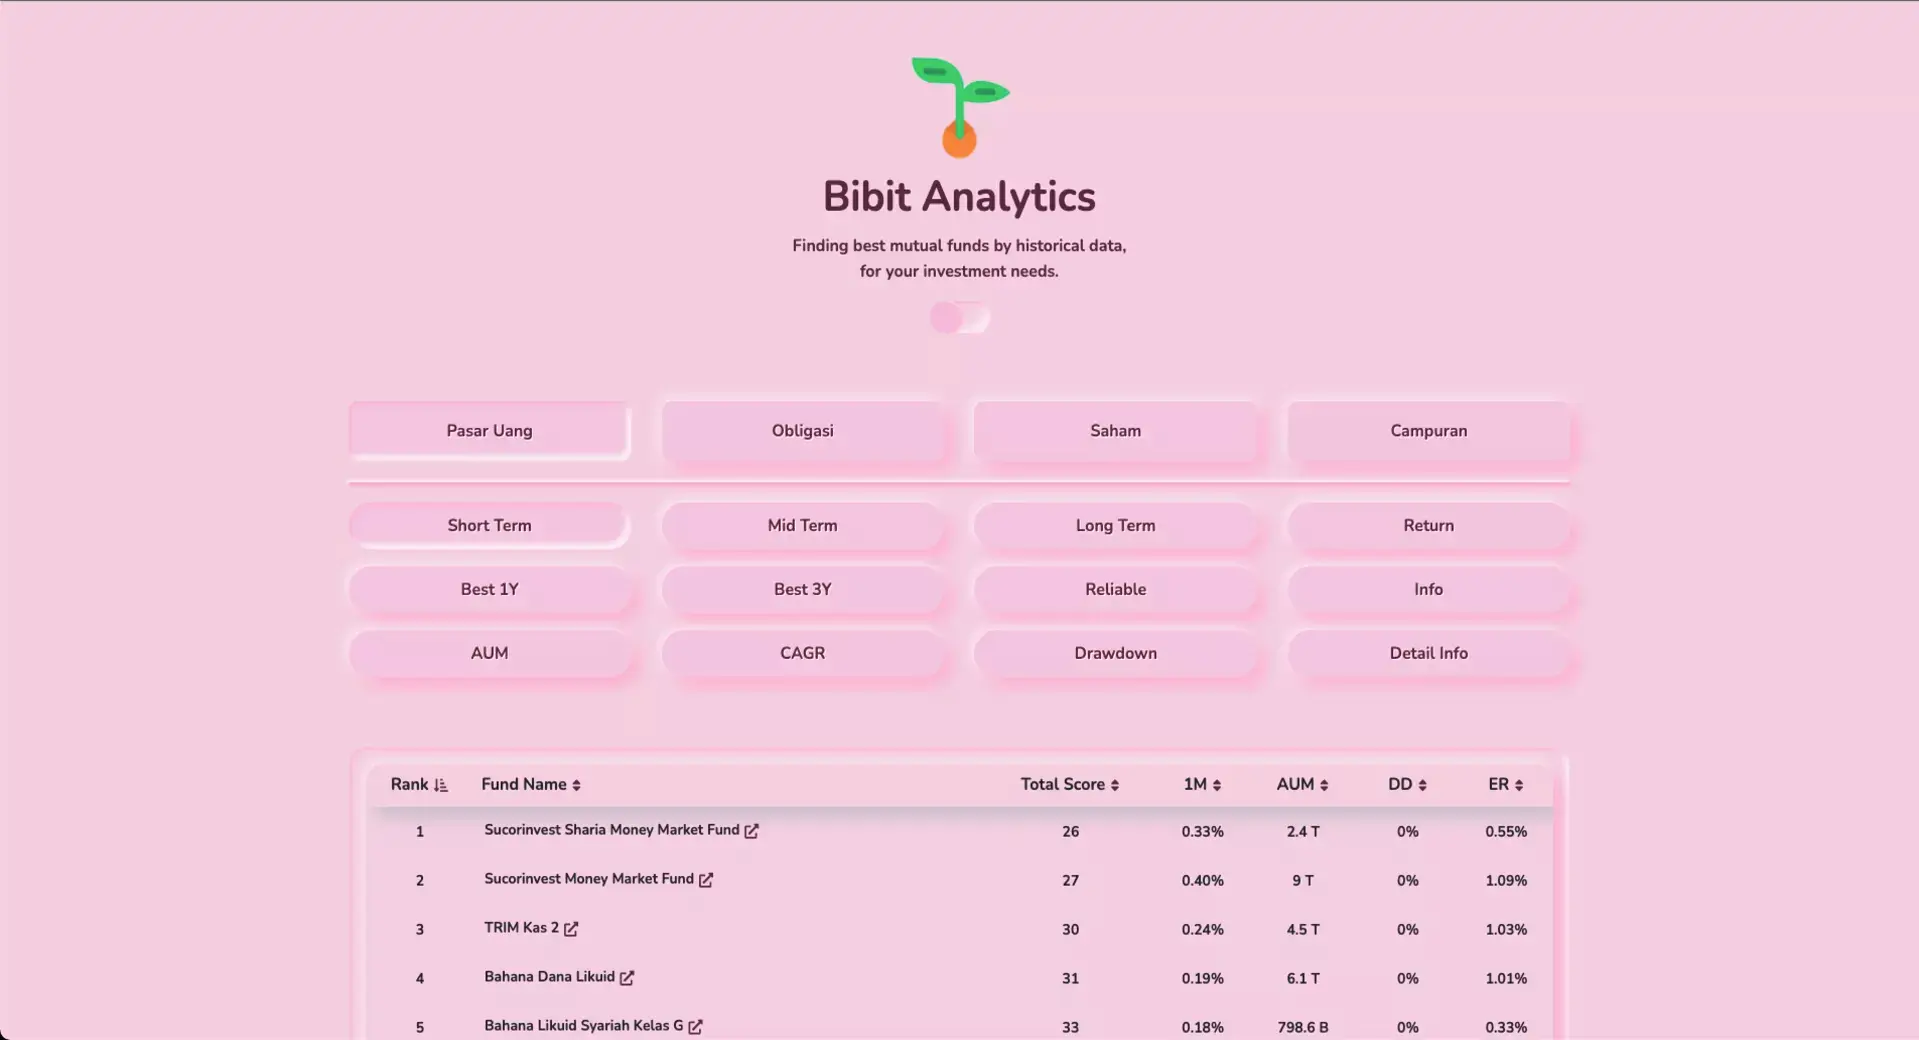 Bibit Analytics